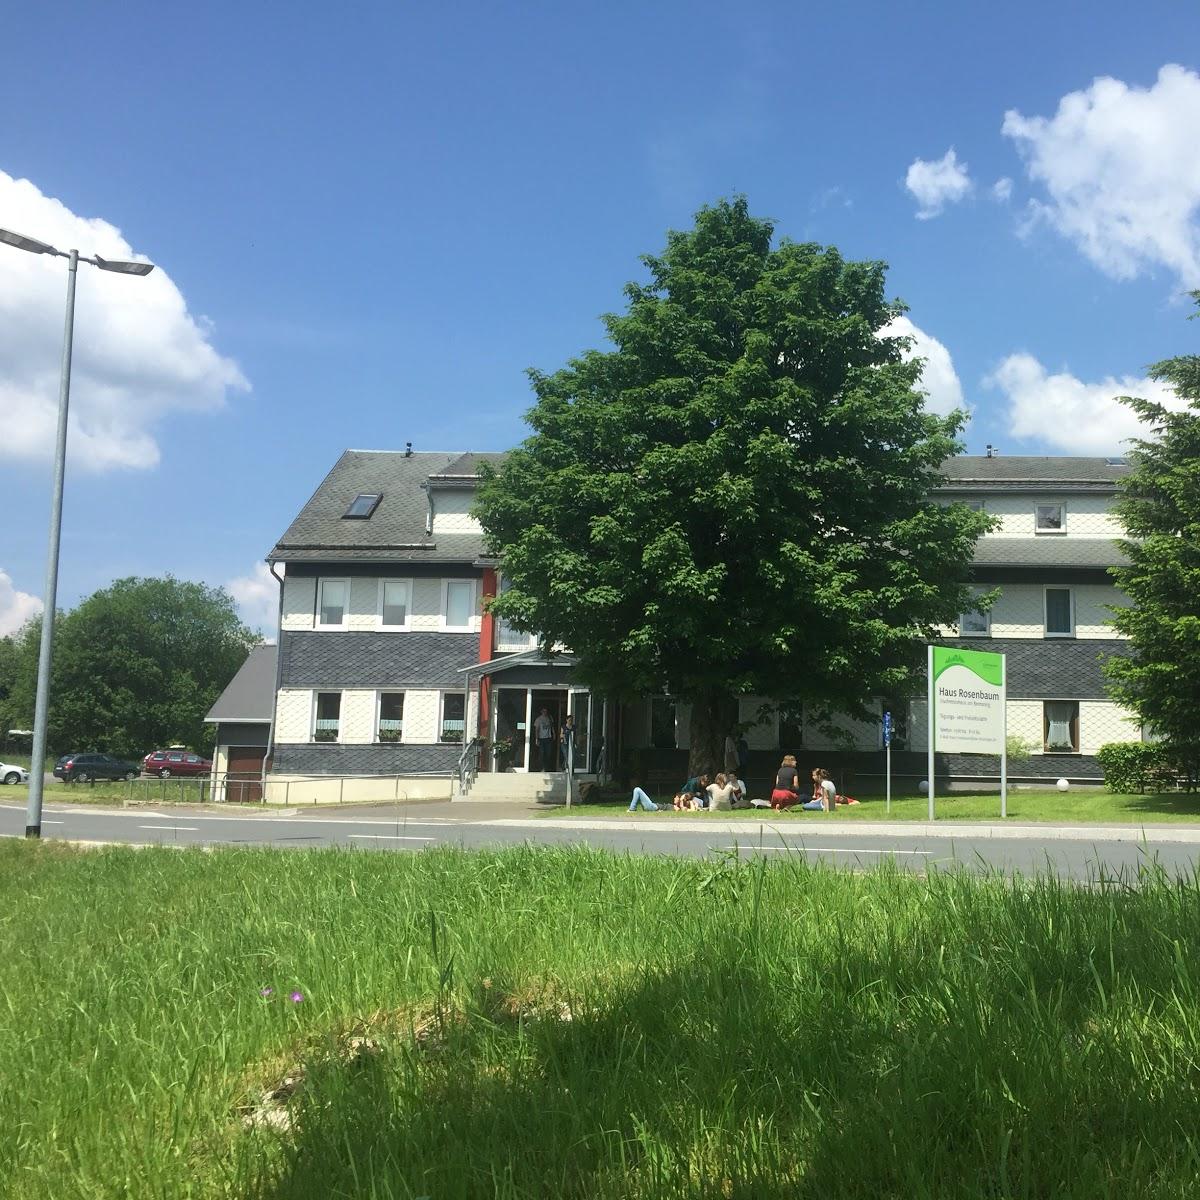 Restaurant "Begegnungsstätte Haus Rosenbaum - Studierendenwerk Thüringen" in  Siegmundsburg